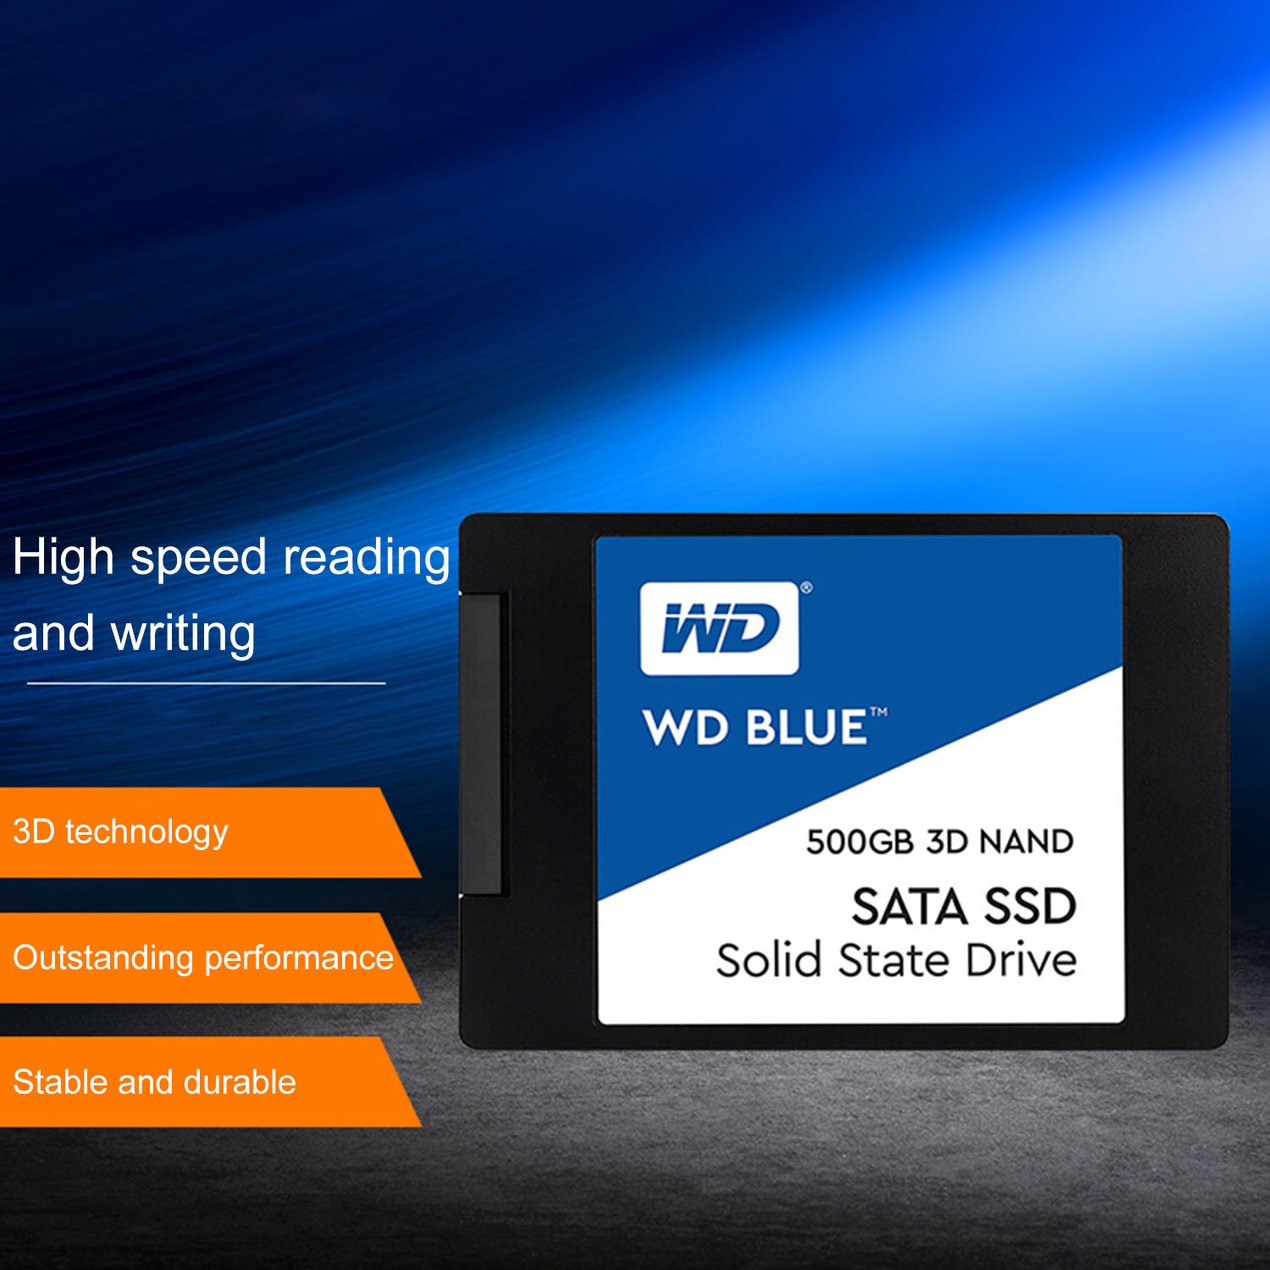 ข้อมูลเกี่ยวกับ Western Digital 1TB WD BLUE SSD Hard Disk SSD 250 GB 500GB 1TB HD 3D NAND 2.5 "SATA III 6กิกะไบต์/วินาทีภายใน Solid State Drive สำหรับ PC Loptop 3 ปี พร้อมส่ง！ขายดี！！